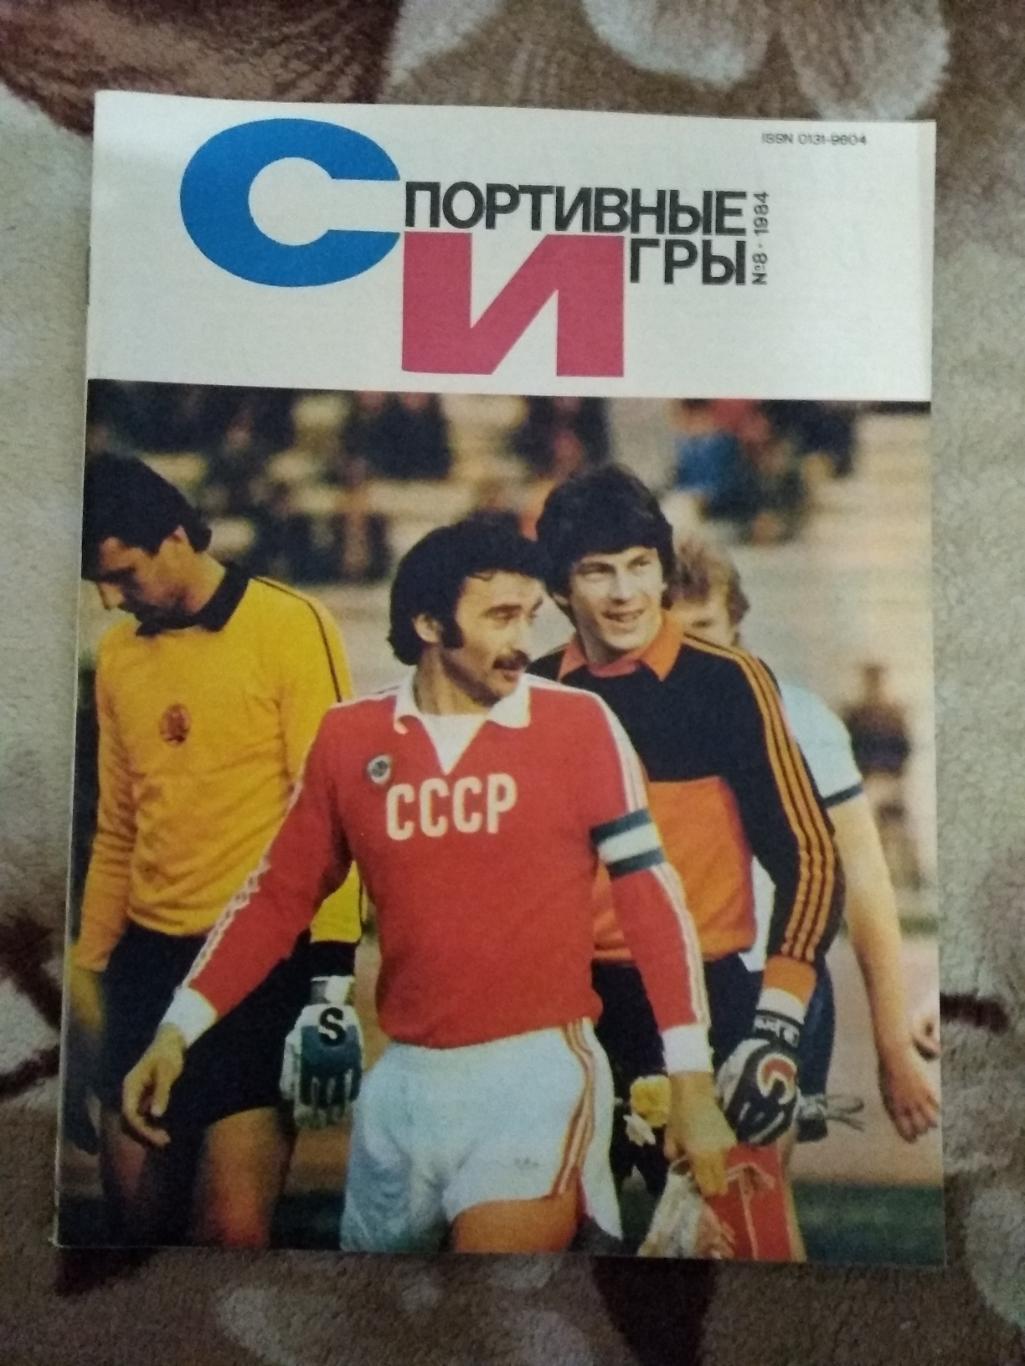 Журнал.Спортивные игры № 8 1984 г.